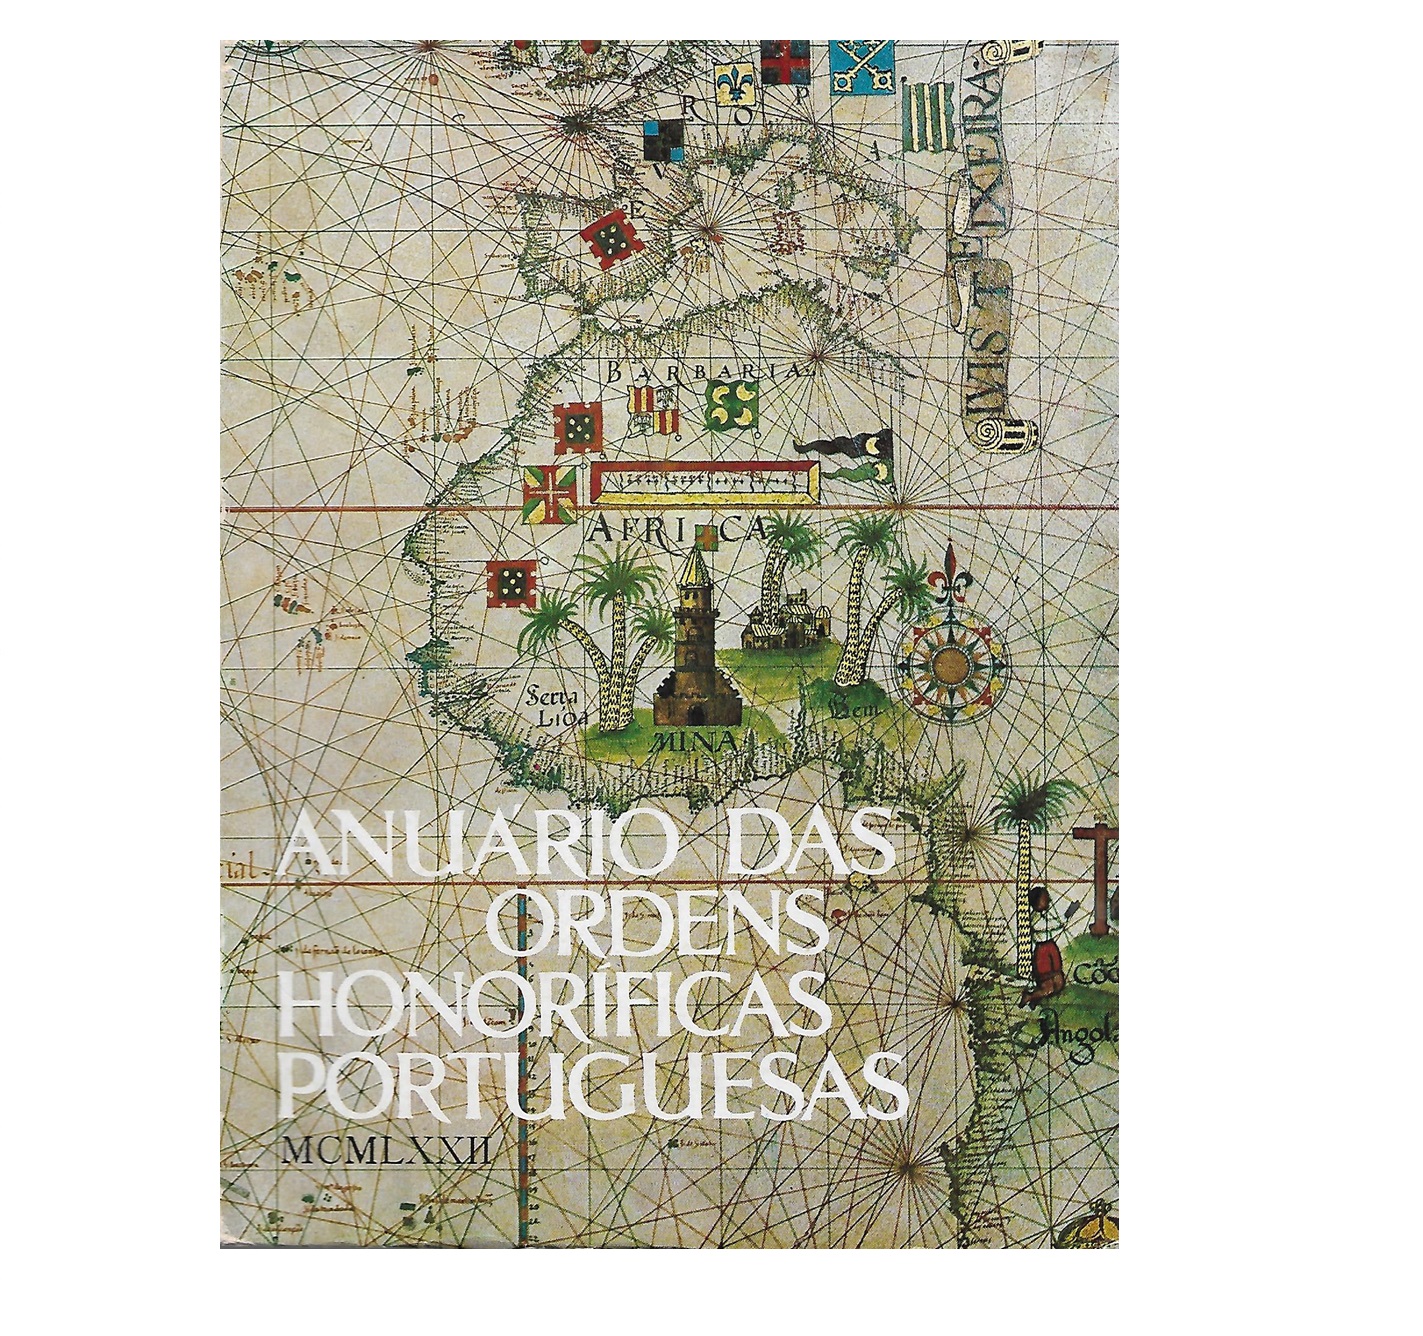 ANUÁRIO das Ordens Honorificas Portuguesas